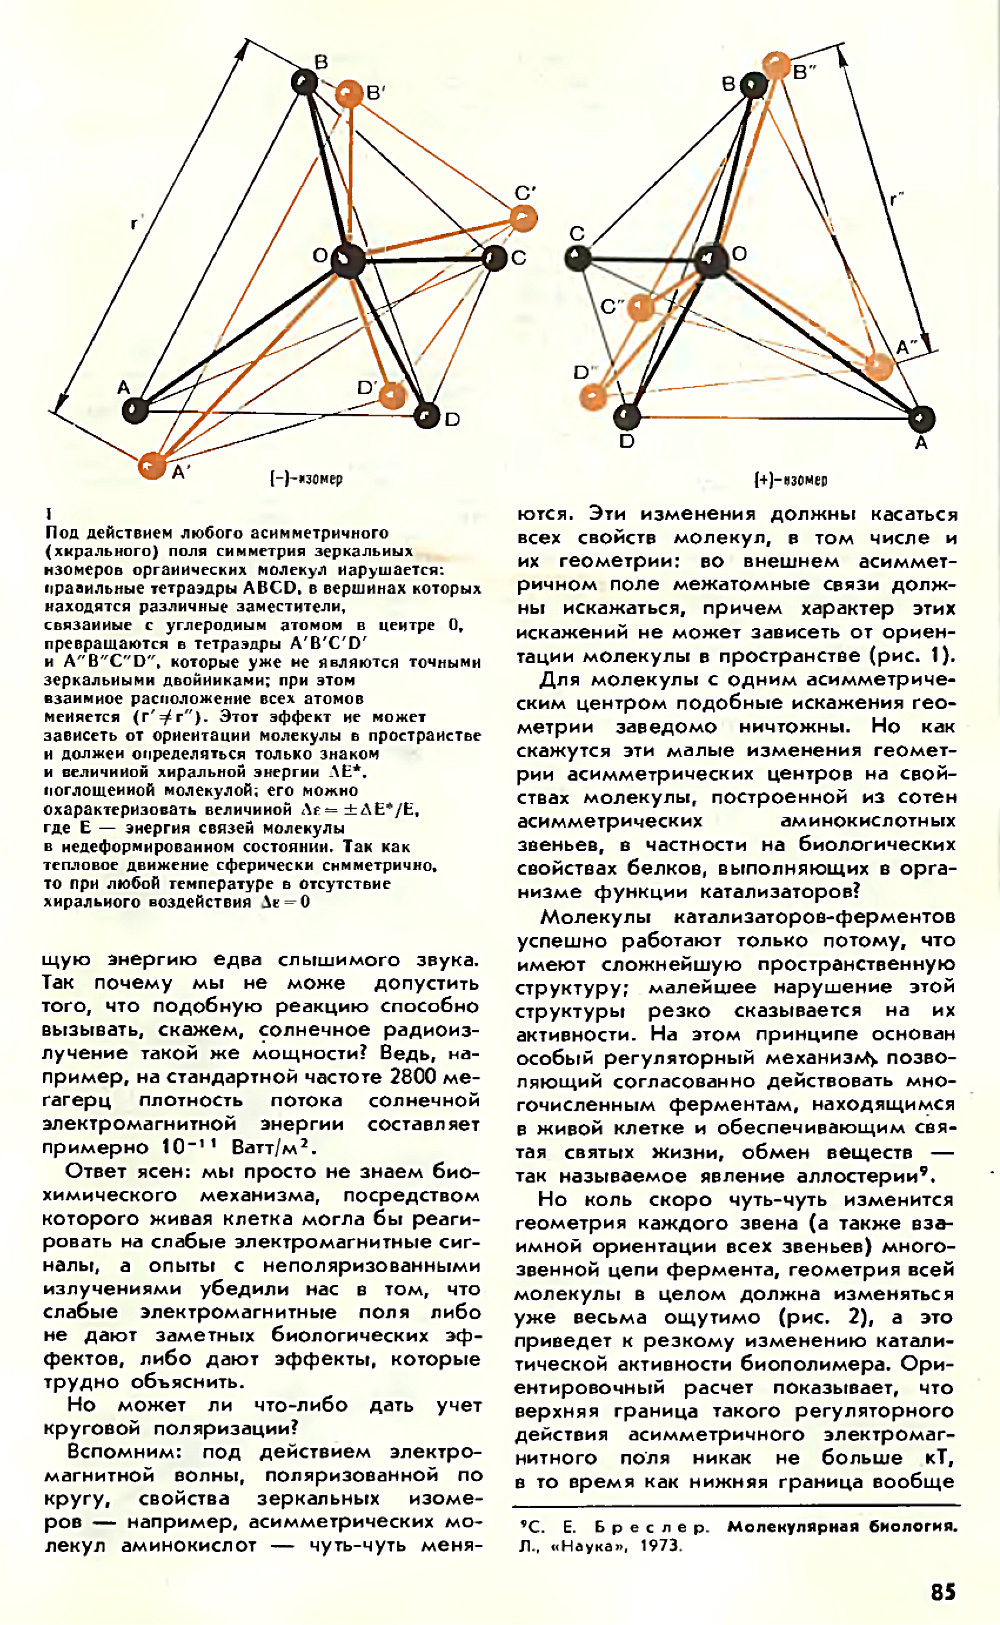 Асимметрия против хаоса, или что такое биополе. В. Жвирблис. Химия и жизнь, 1980, №12, с.81-87. Фотокопия №5